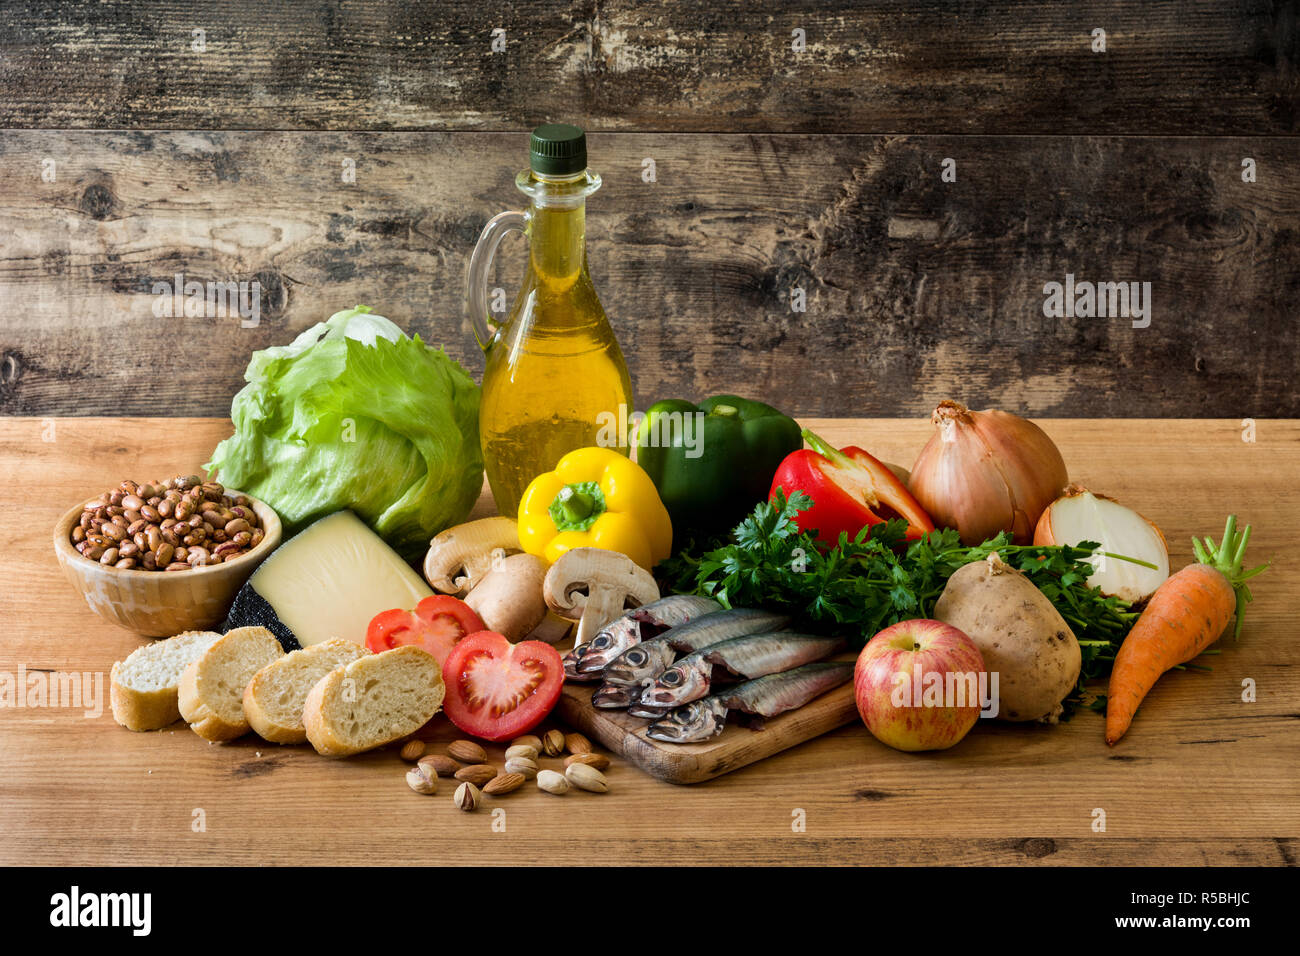 Mangiare sano. Dieta mediterranea. Frutta, verdura, cereali, noci olio d'oliva e di pesce sul tavolo di legno Foto Stock